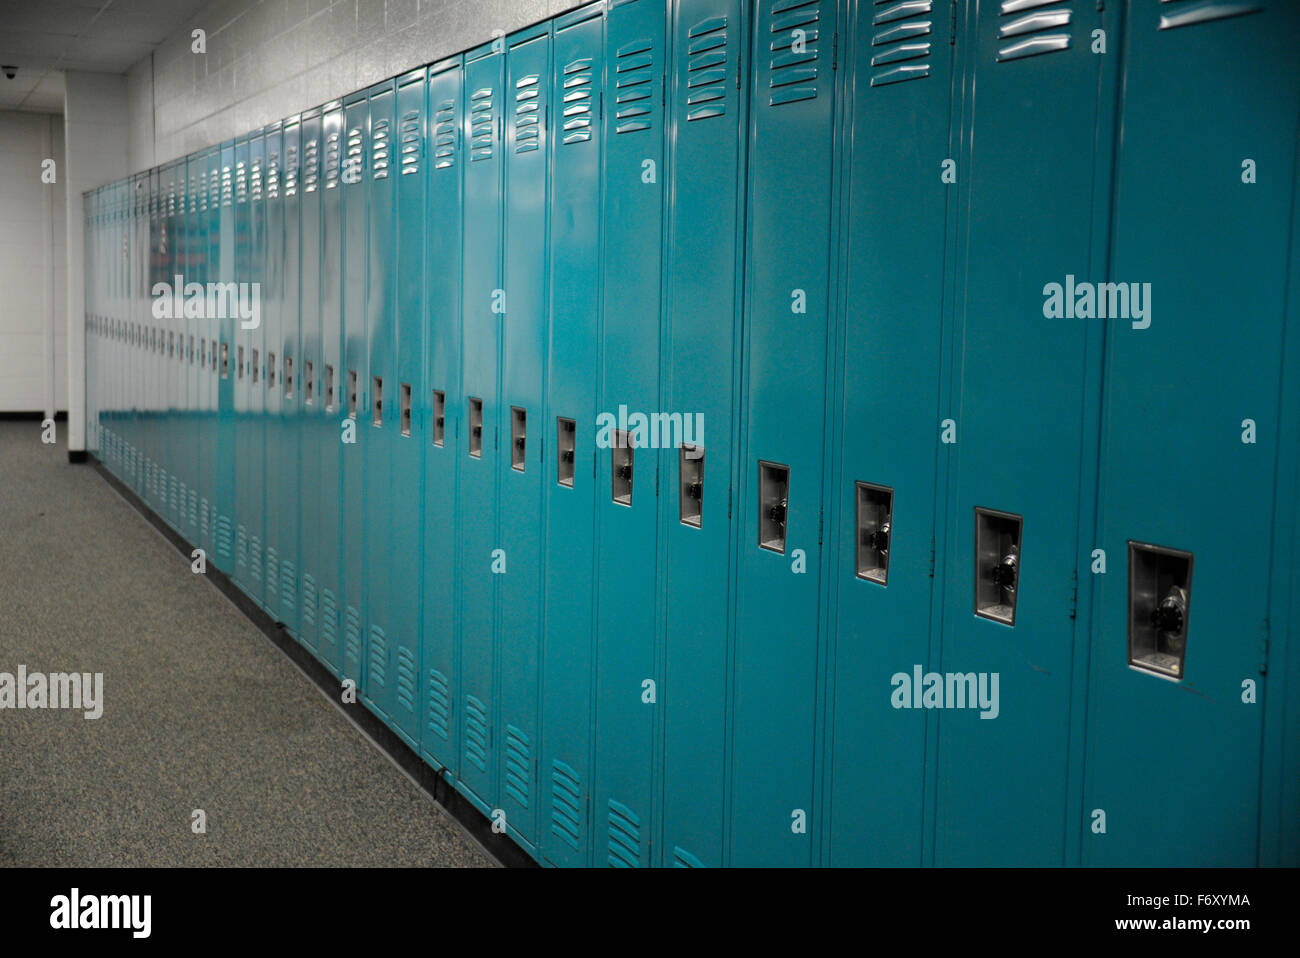 Casilleros escolares fotografías e imágenes de alta resolución - Alamy